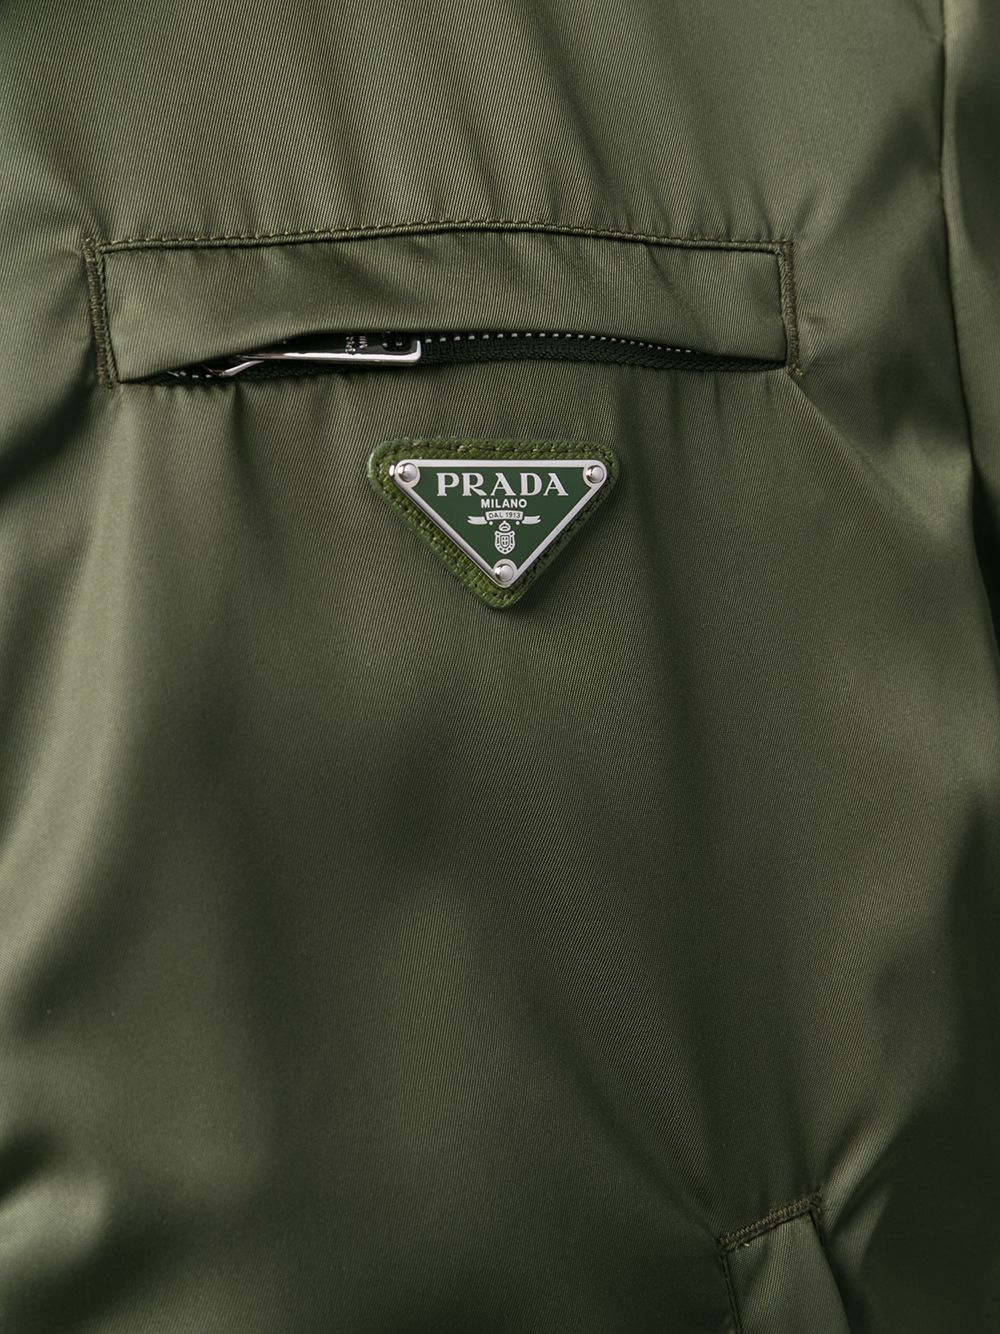 фото Prada легкая куртка на молнии